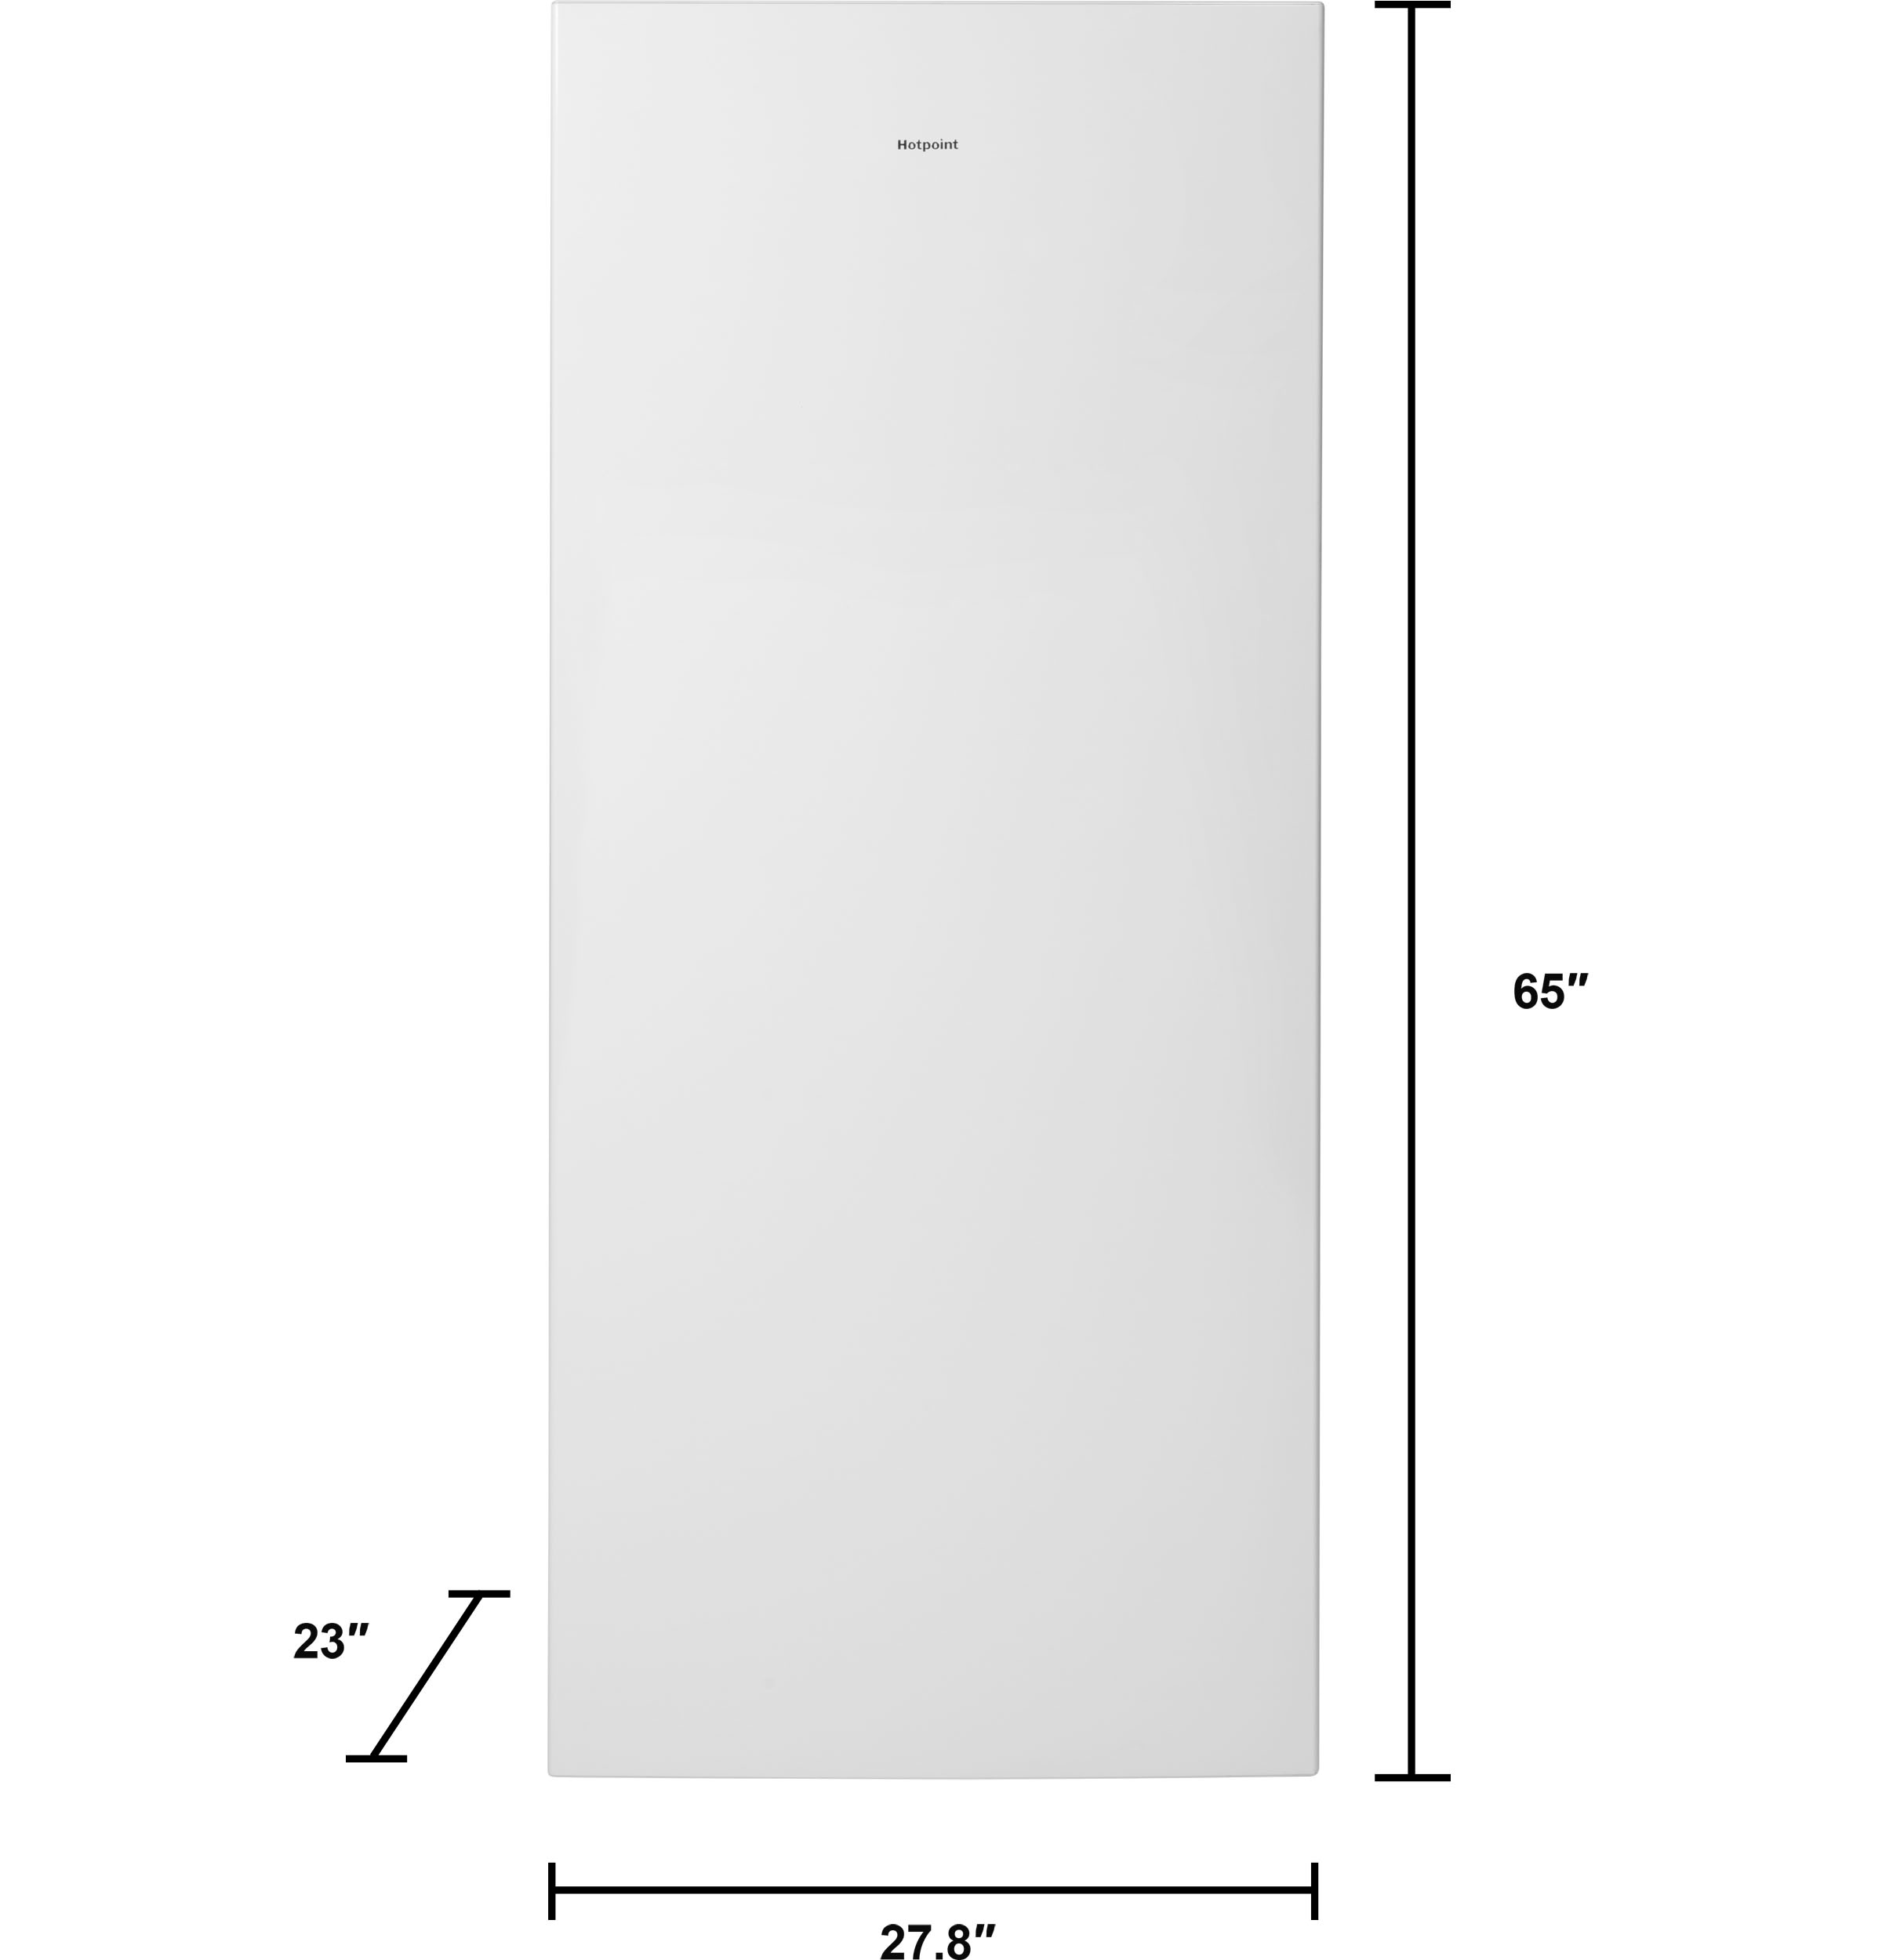 HorecaTraders Standing Freezer with Wheels | 2 doors | 134 x 84.5 x 200 cm